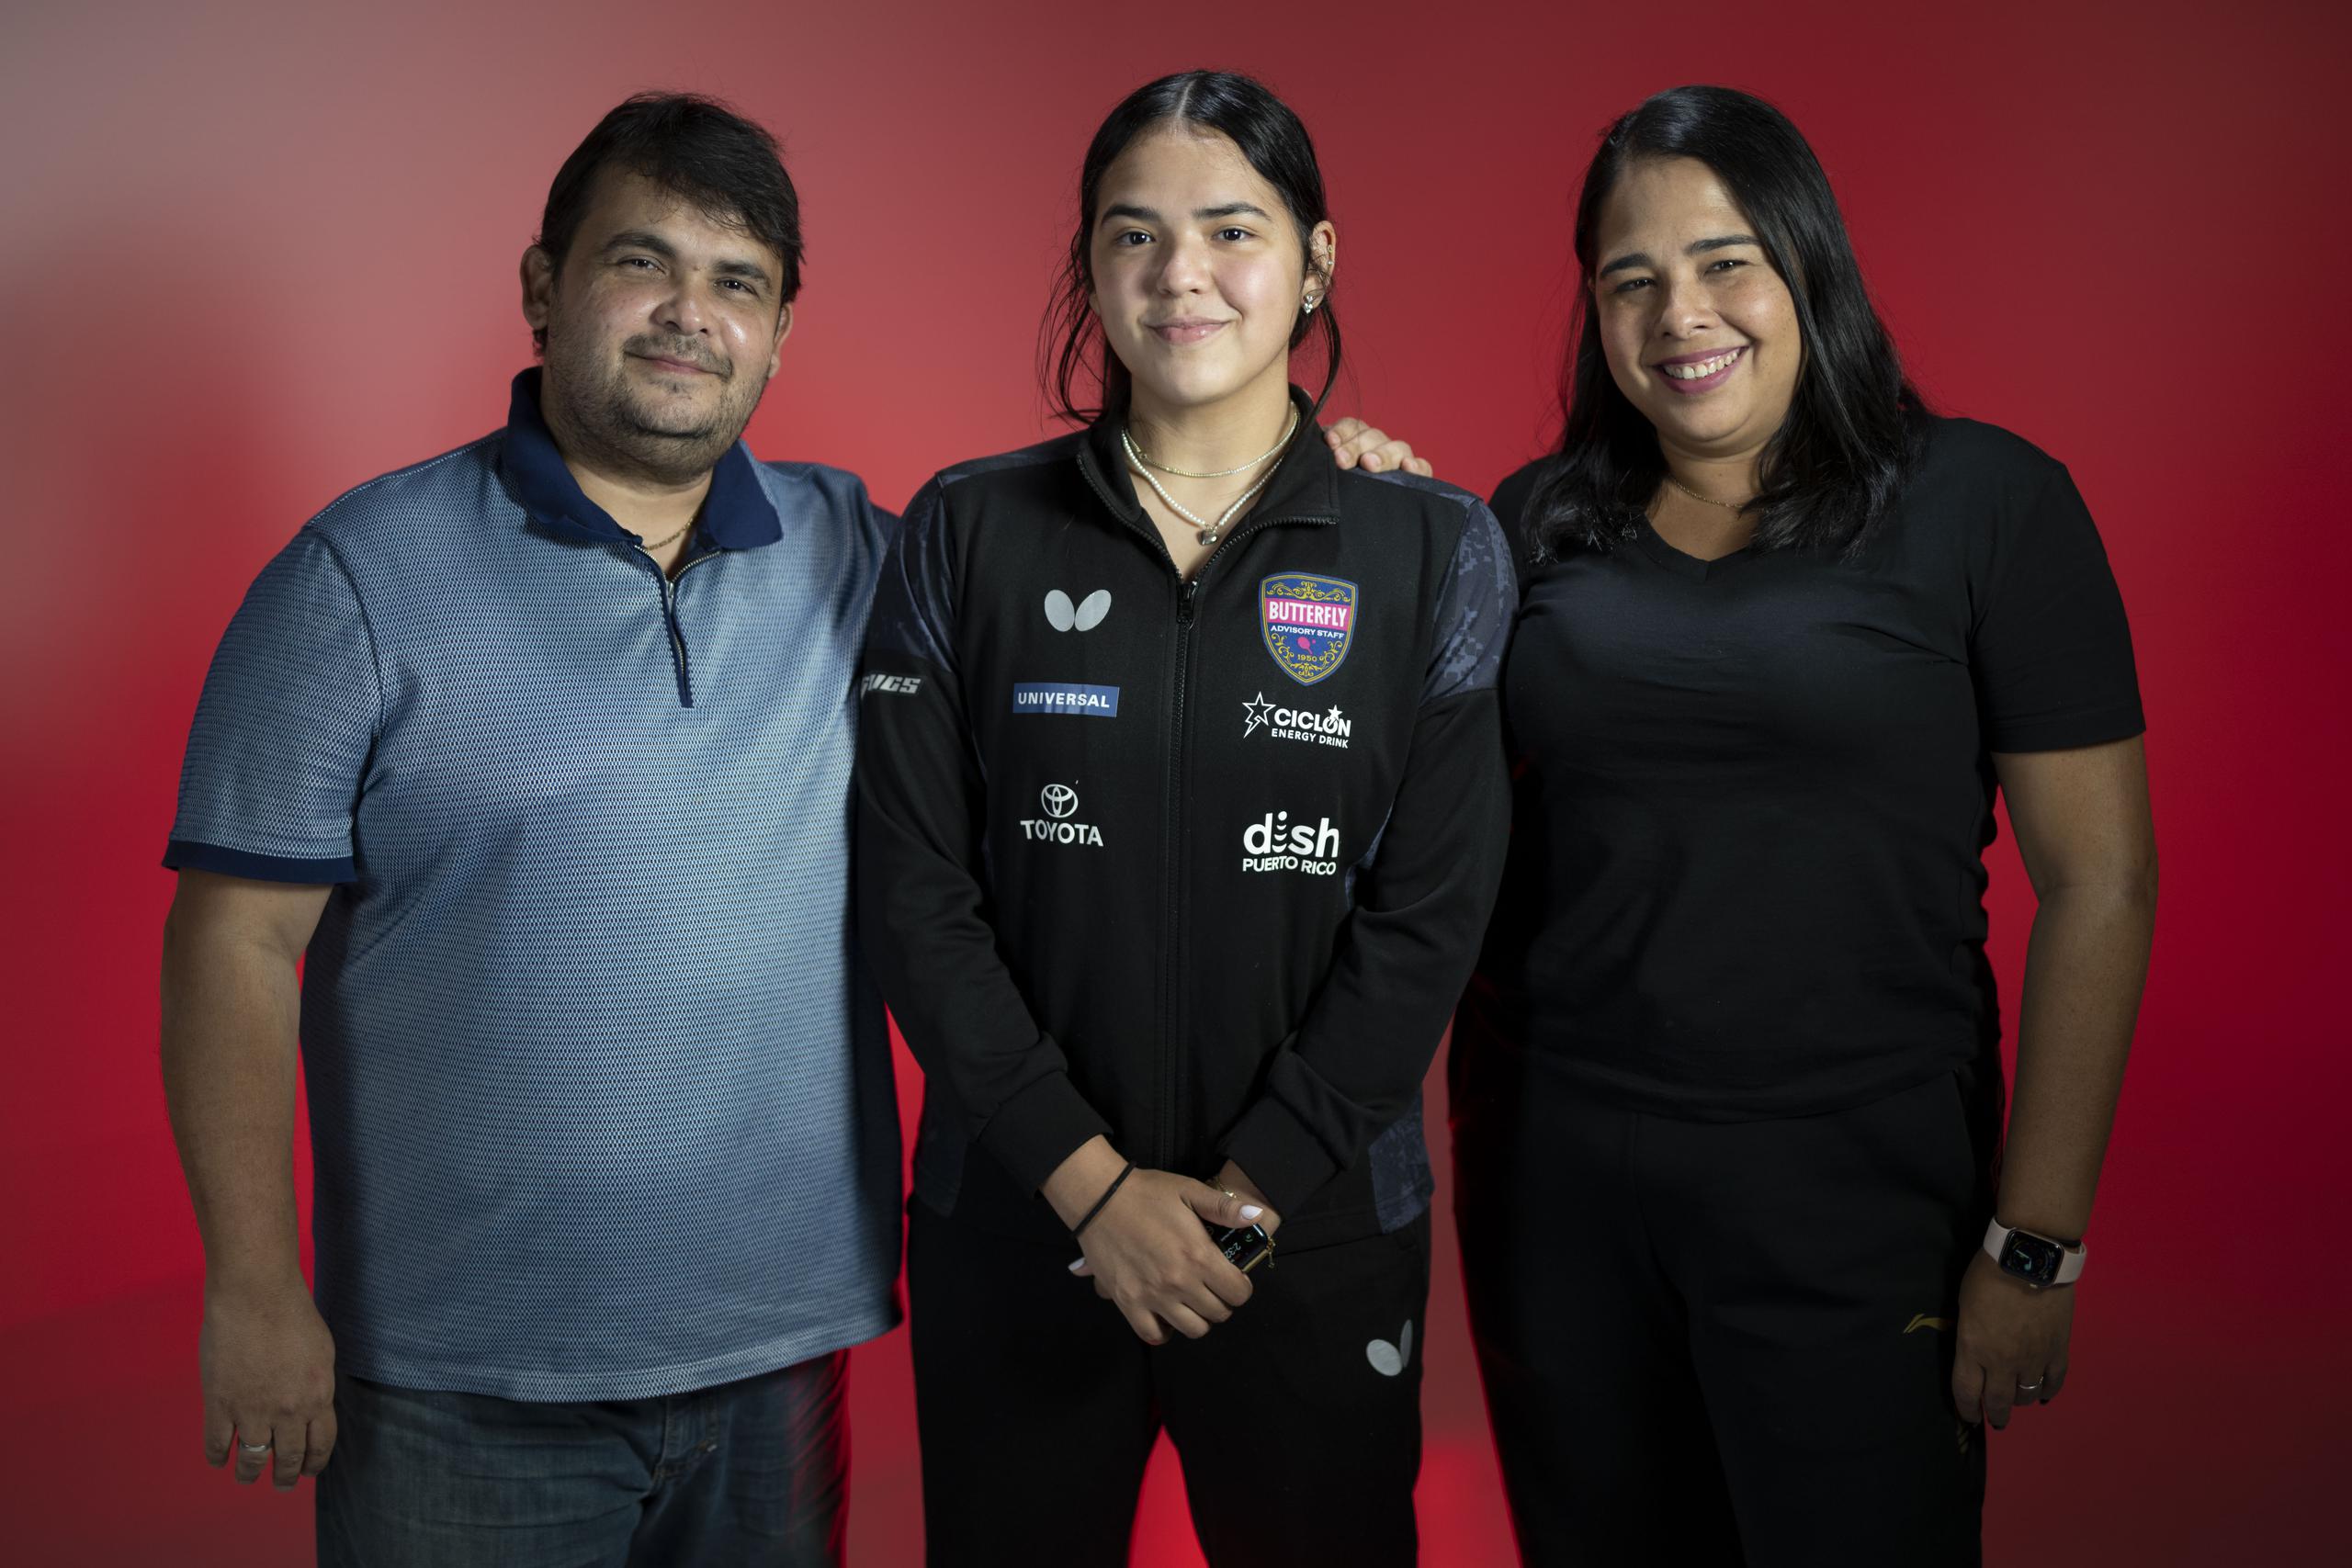 El padre y entrenador Bladimir Díaz se queda  por primera vez en casa mientras Adriana viaja. Y la madre Marangely González viaja por primera vez con su hija atleta.